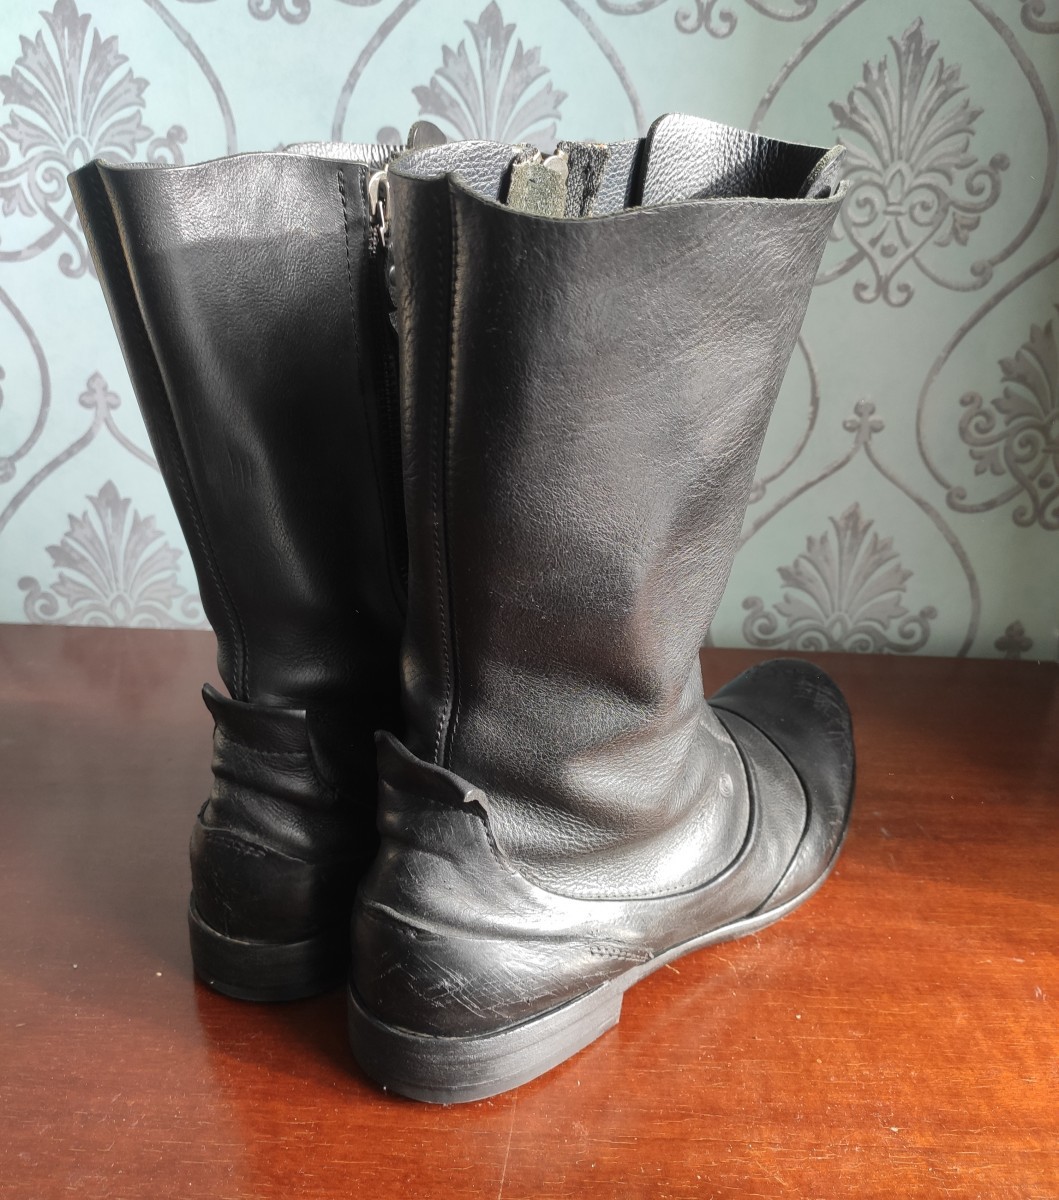 RARE! Distressed toe cap boots.Like GUIDI or A1923 - 5